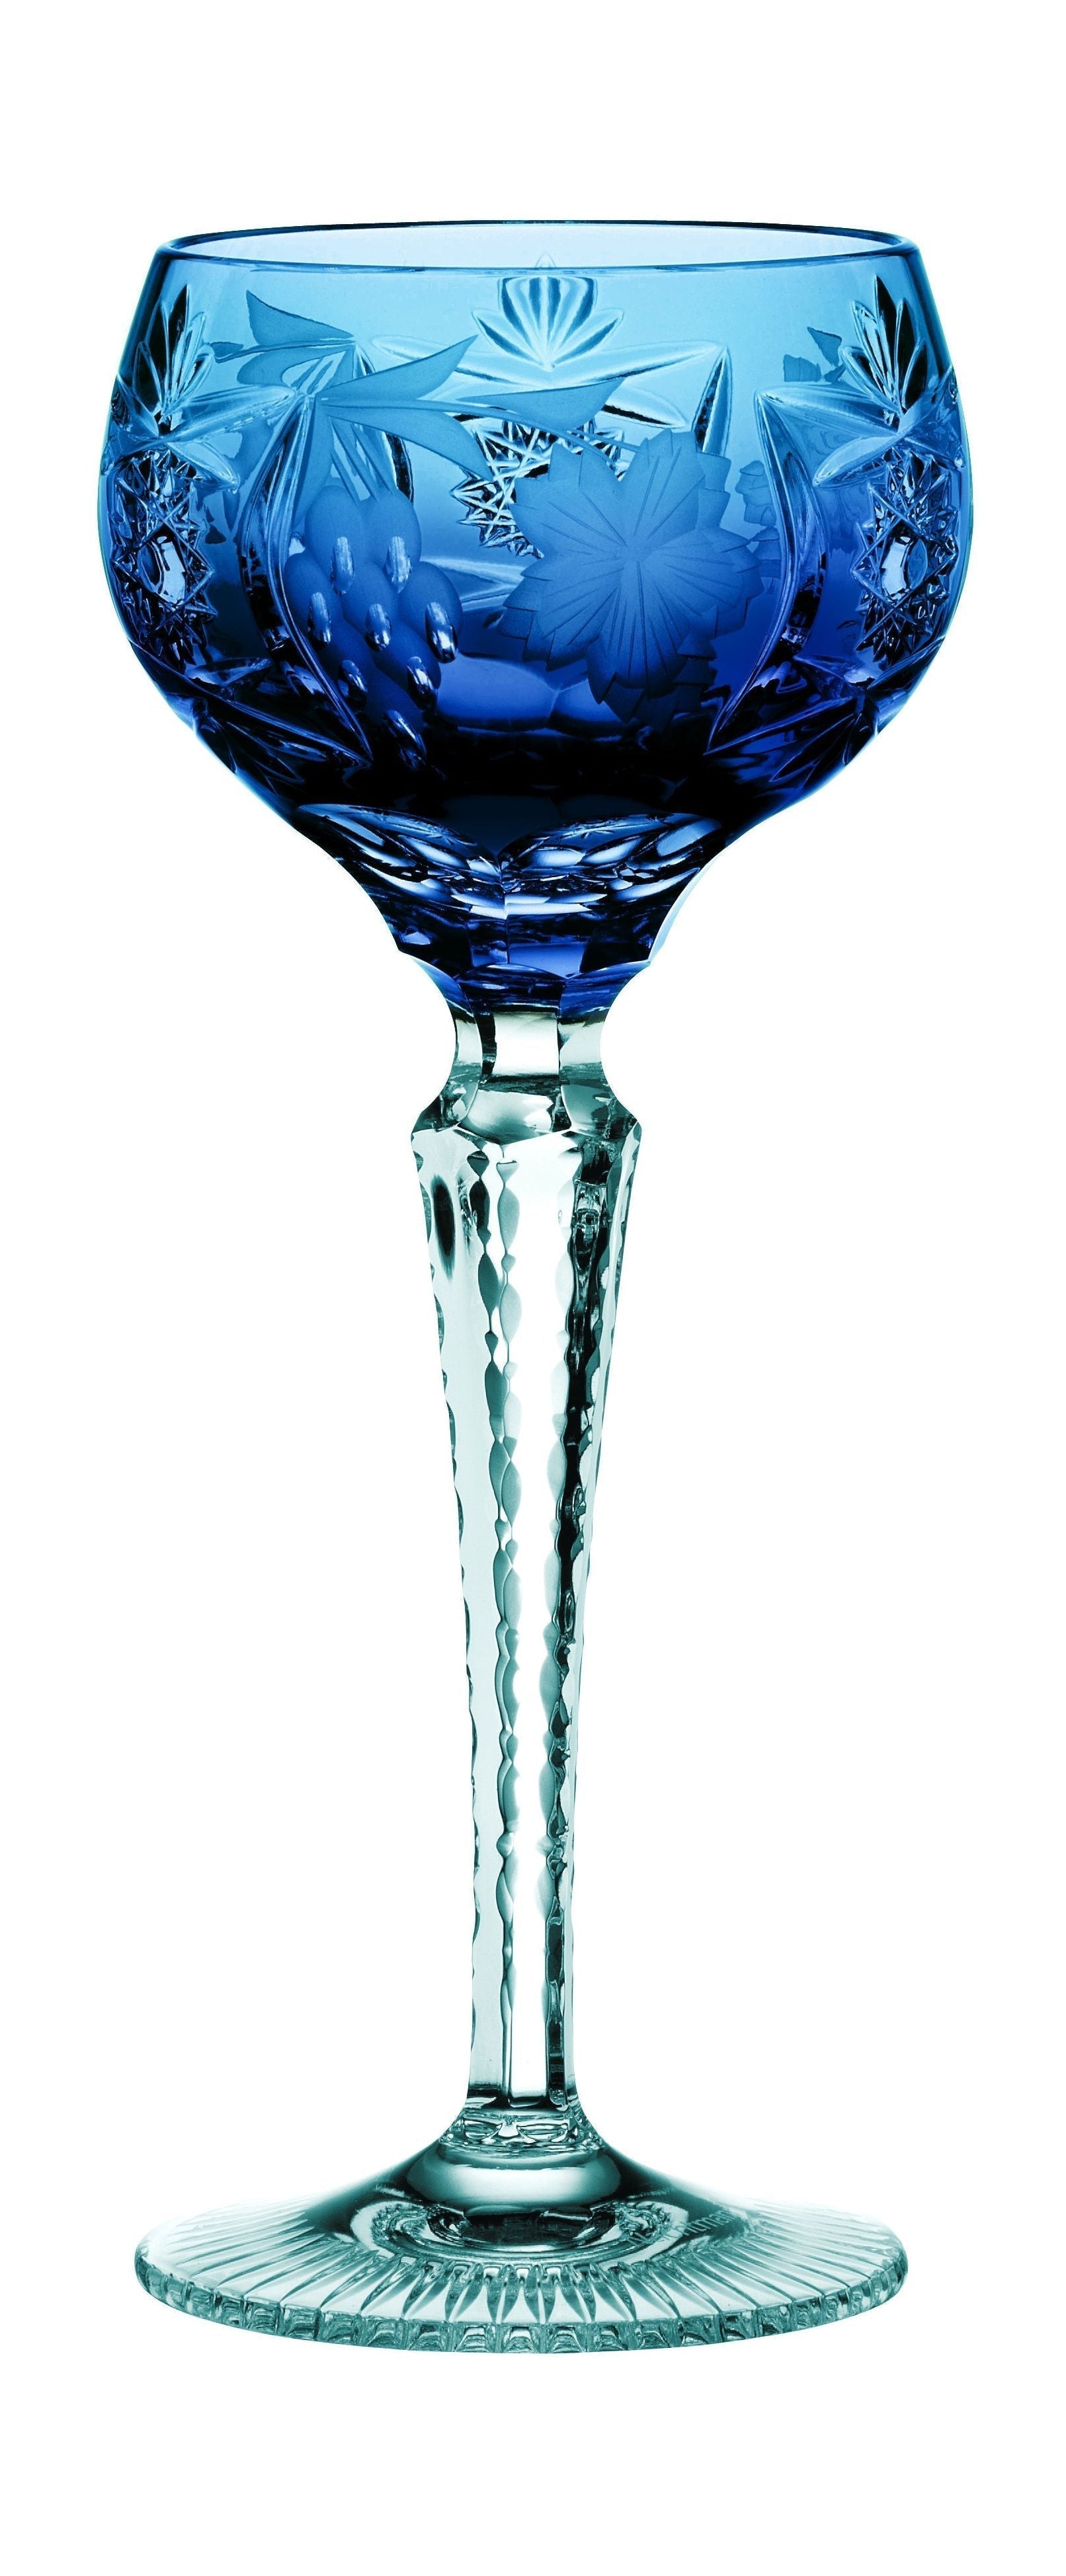 Nachtmann Druiven wijnglas römer 230 ml, kobaltblauw